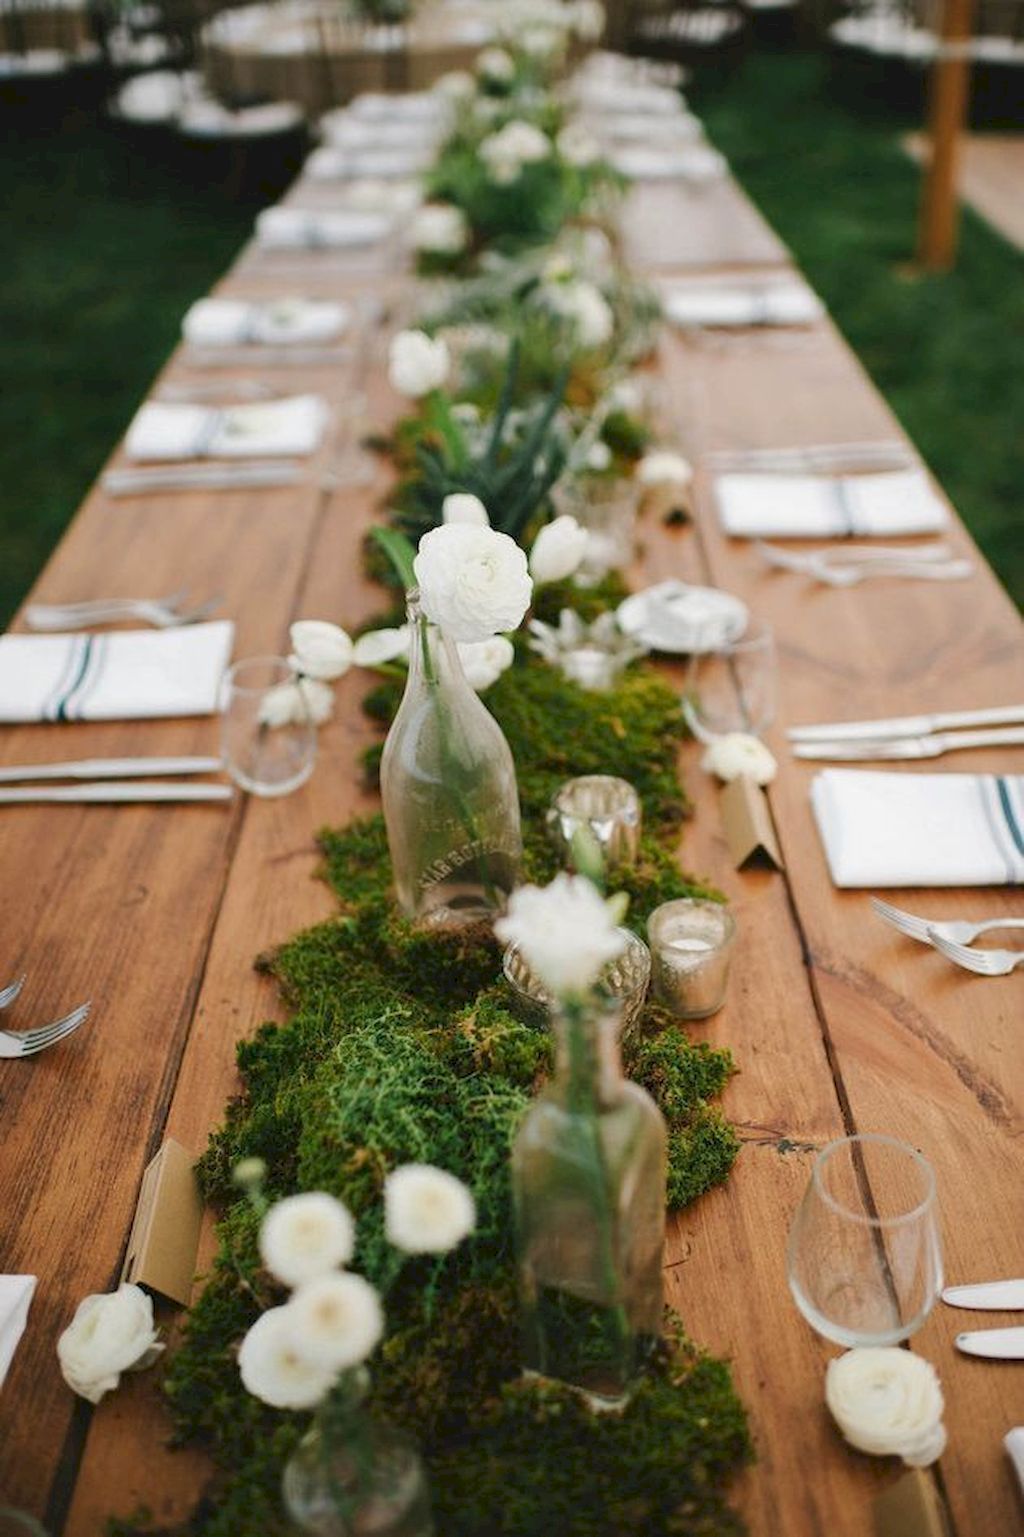 déco table mariage champêtre chic chemin de table en mousse végétale renoncules blanches